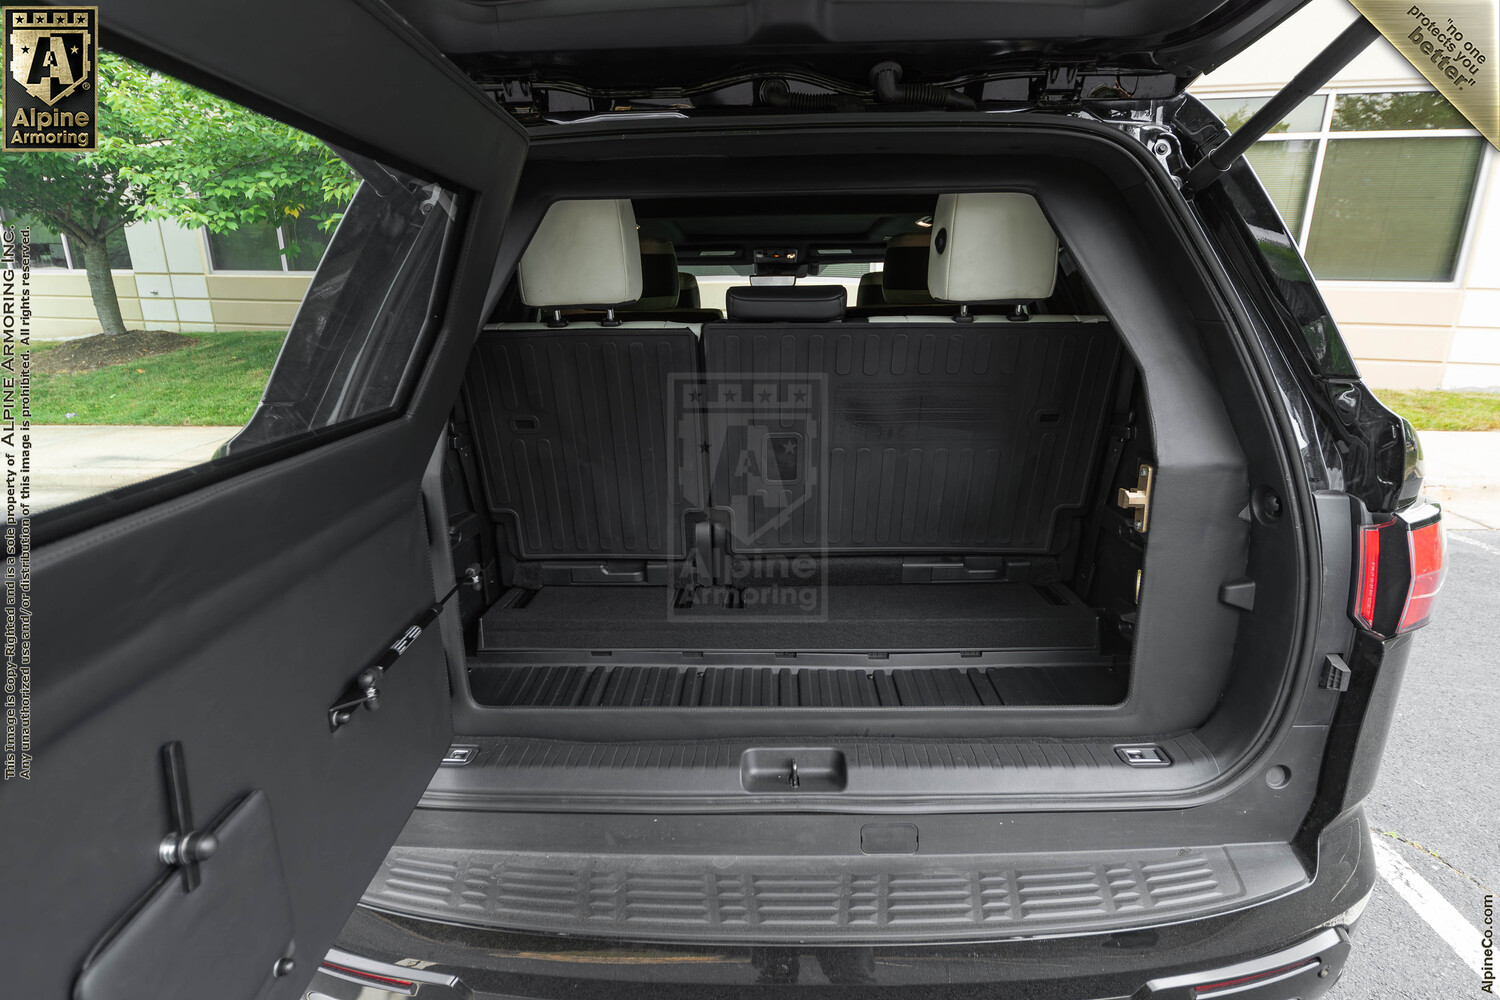 Inventory SUV Toyota Sequoia VIN:3780 Exterior Interior Images